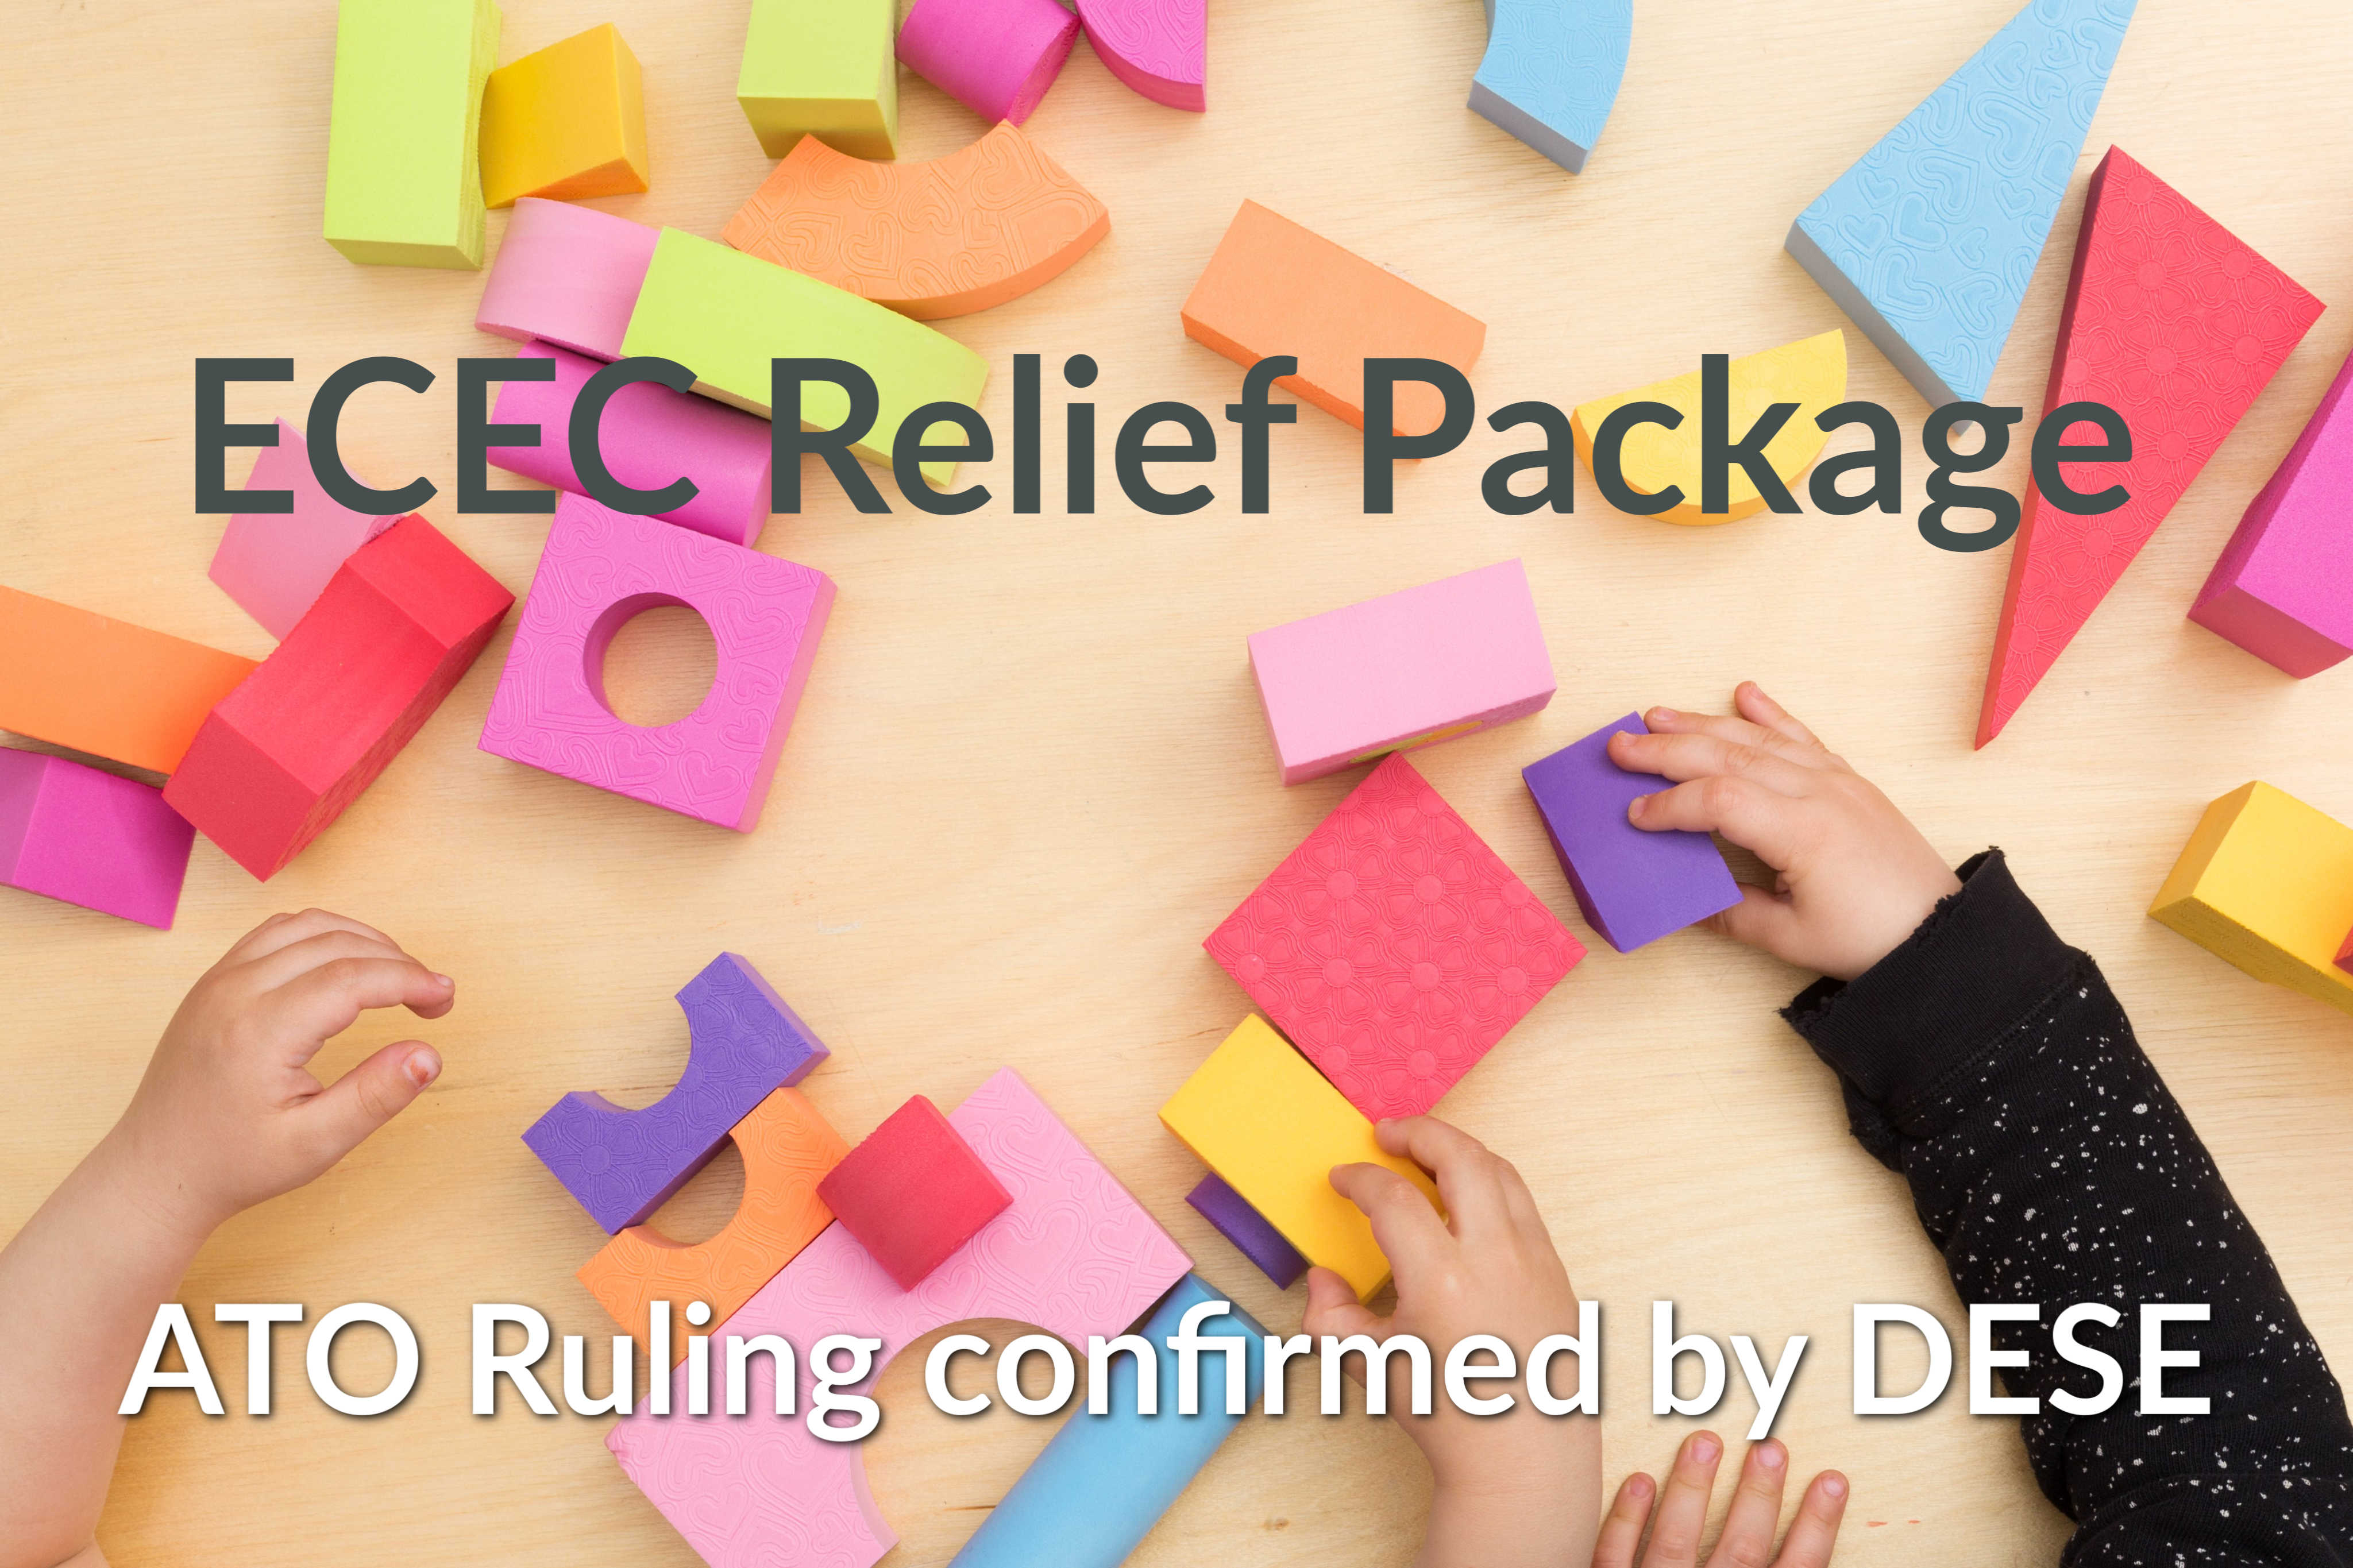 ECEC Relief Package